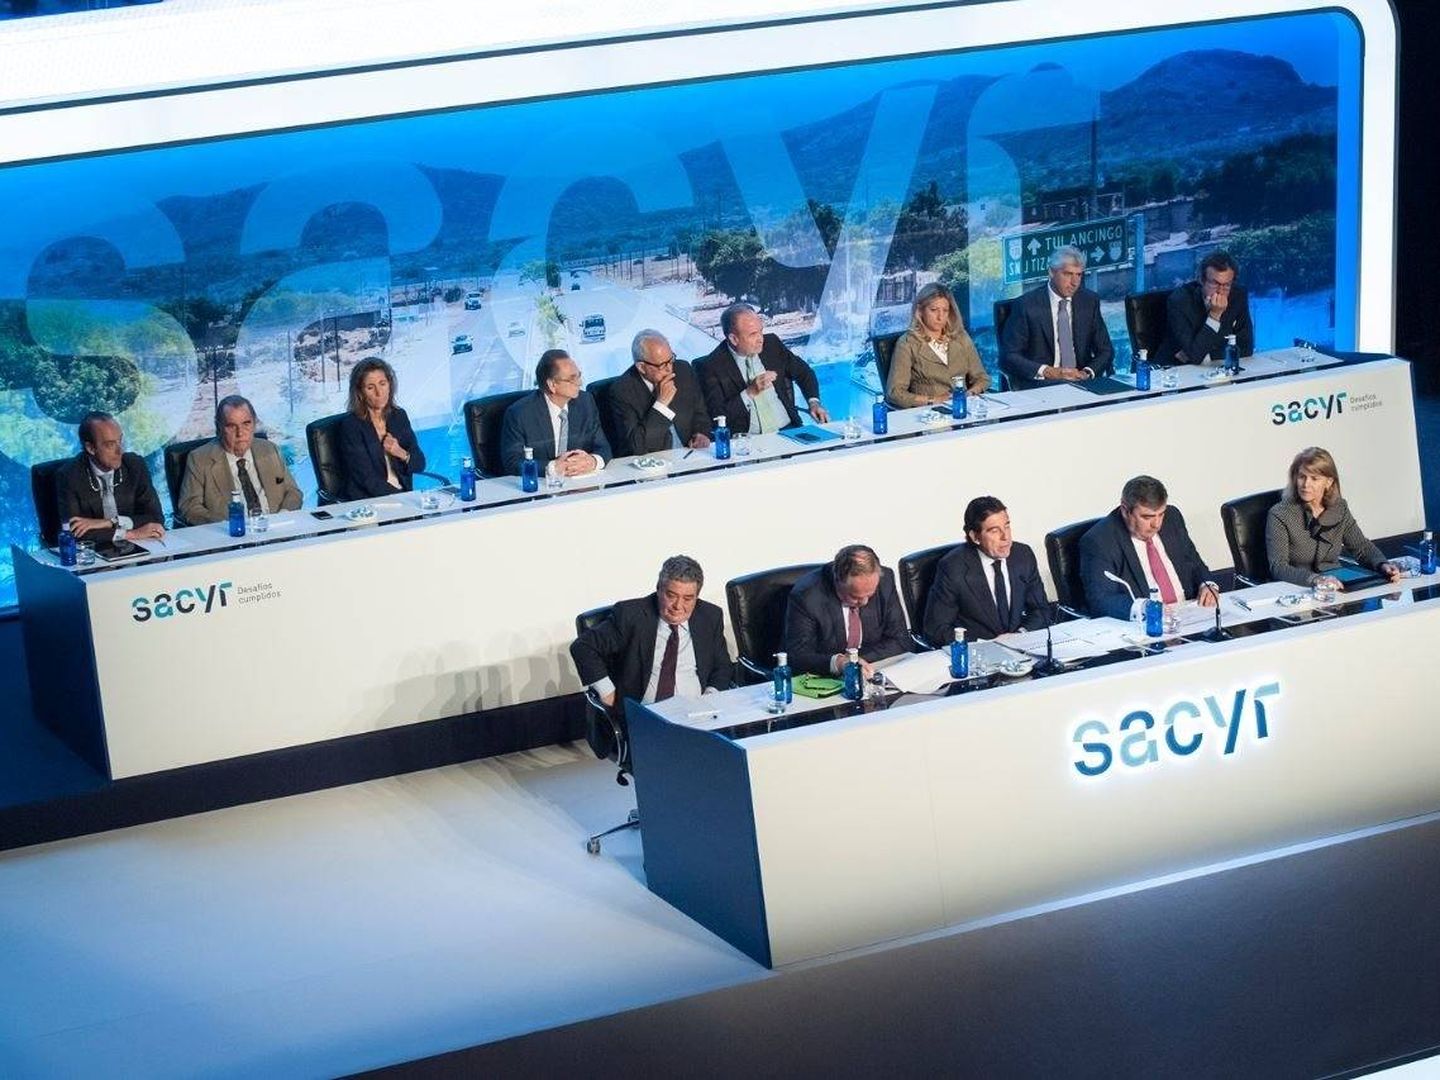 Junta general de accionistas de Sacyr 2019. (EP)